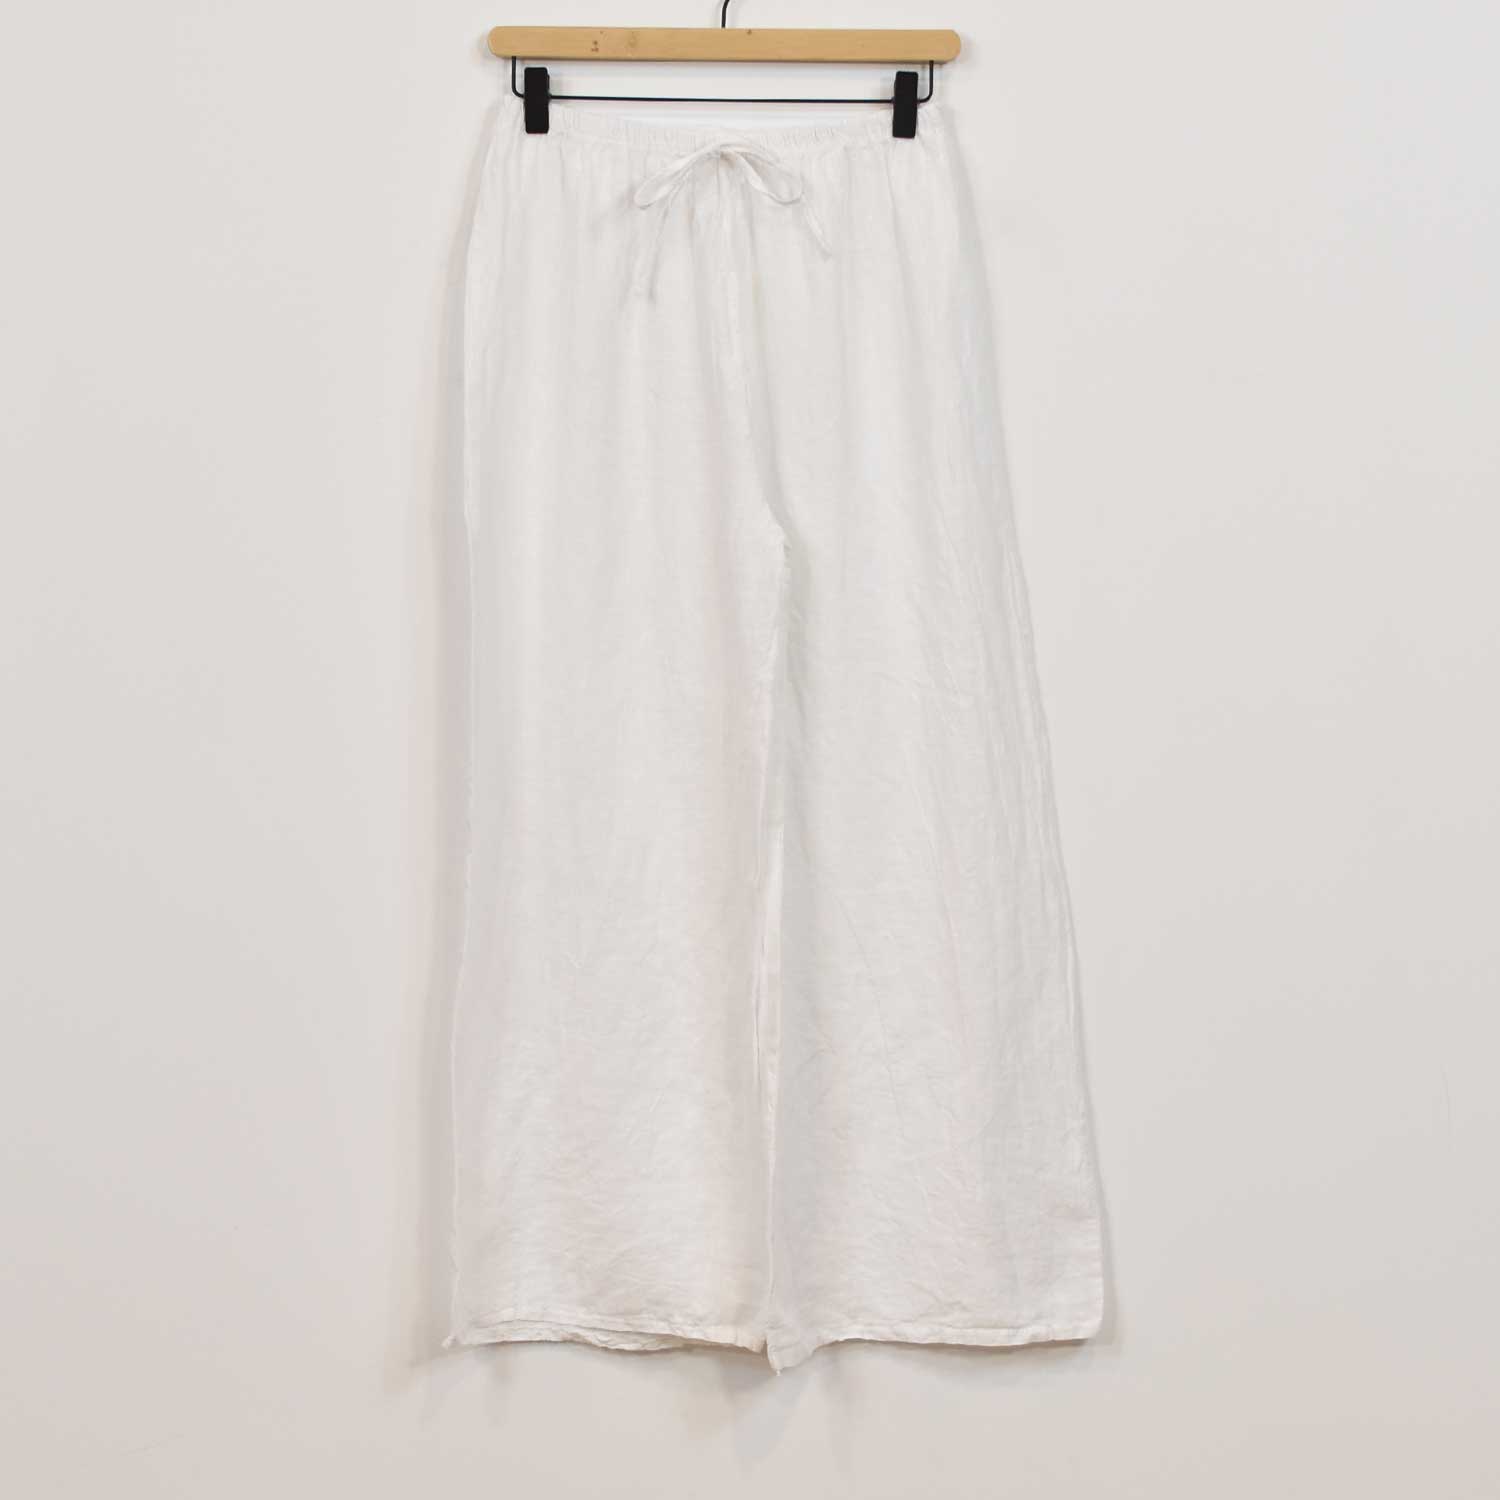 Pantalon droit en lin blanc